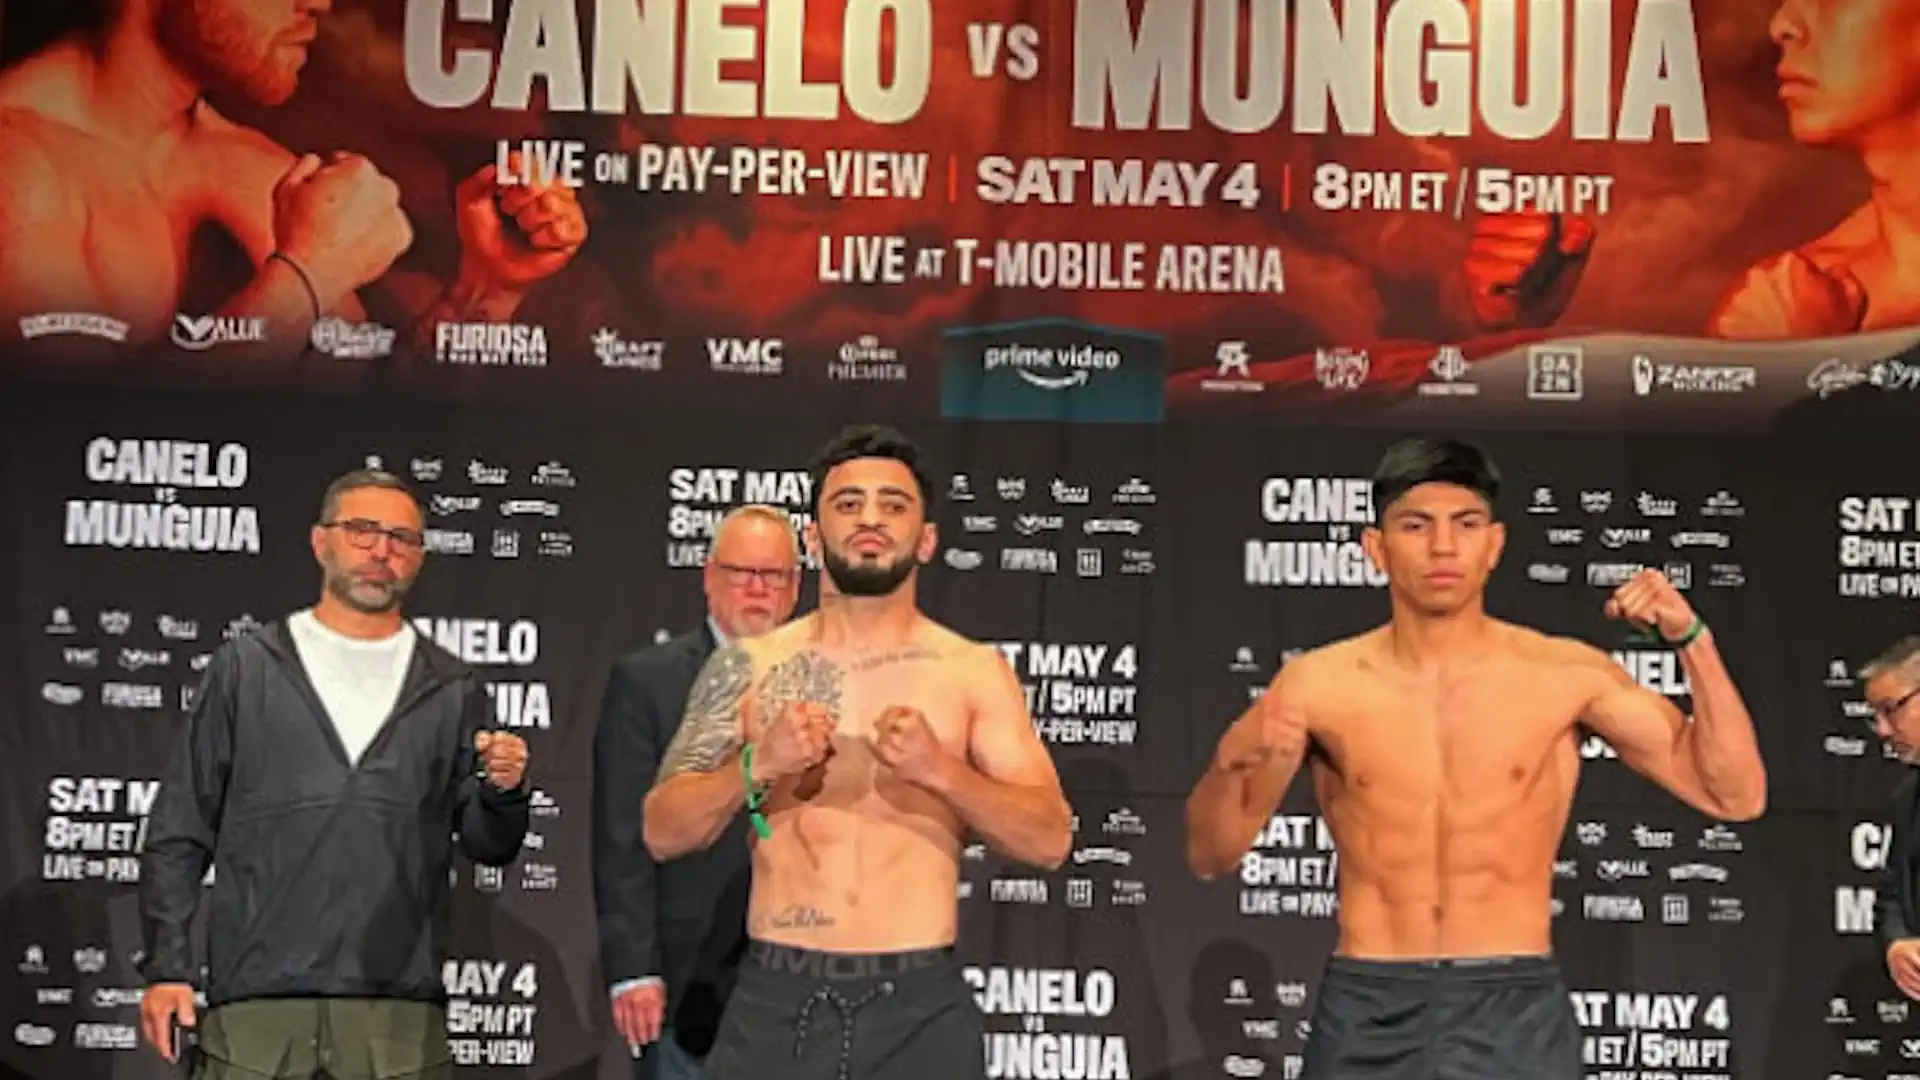 Online broadcast of Canelo Alvarez - Munguia boxing night